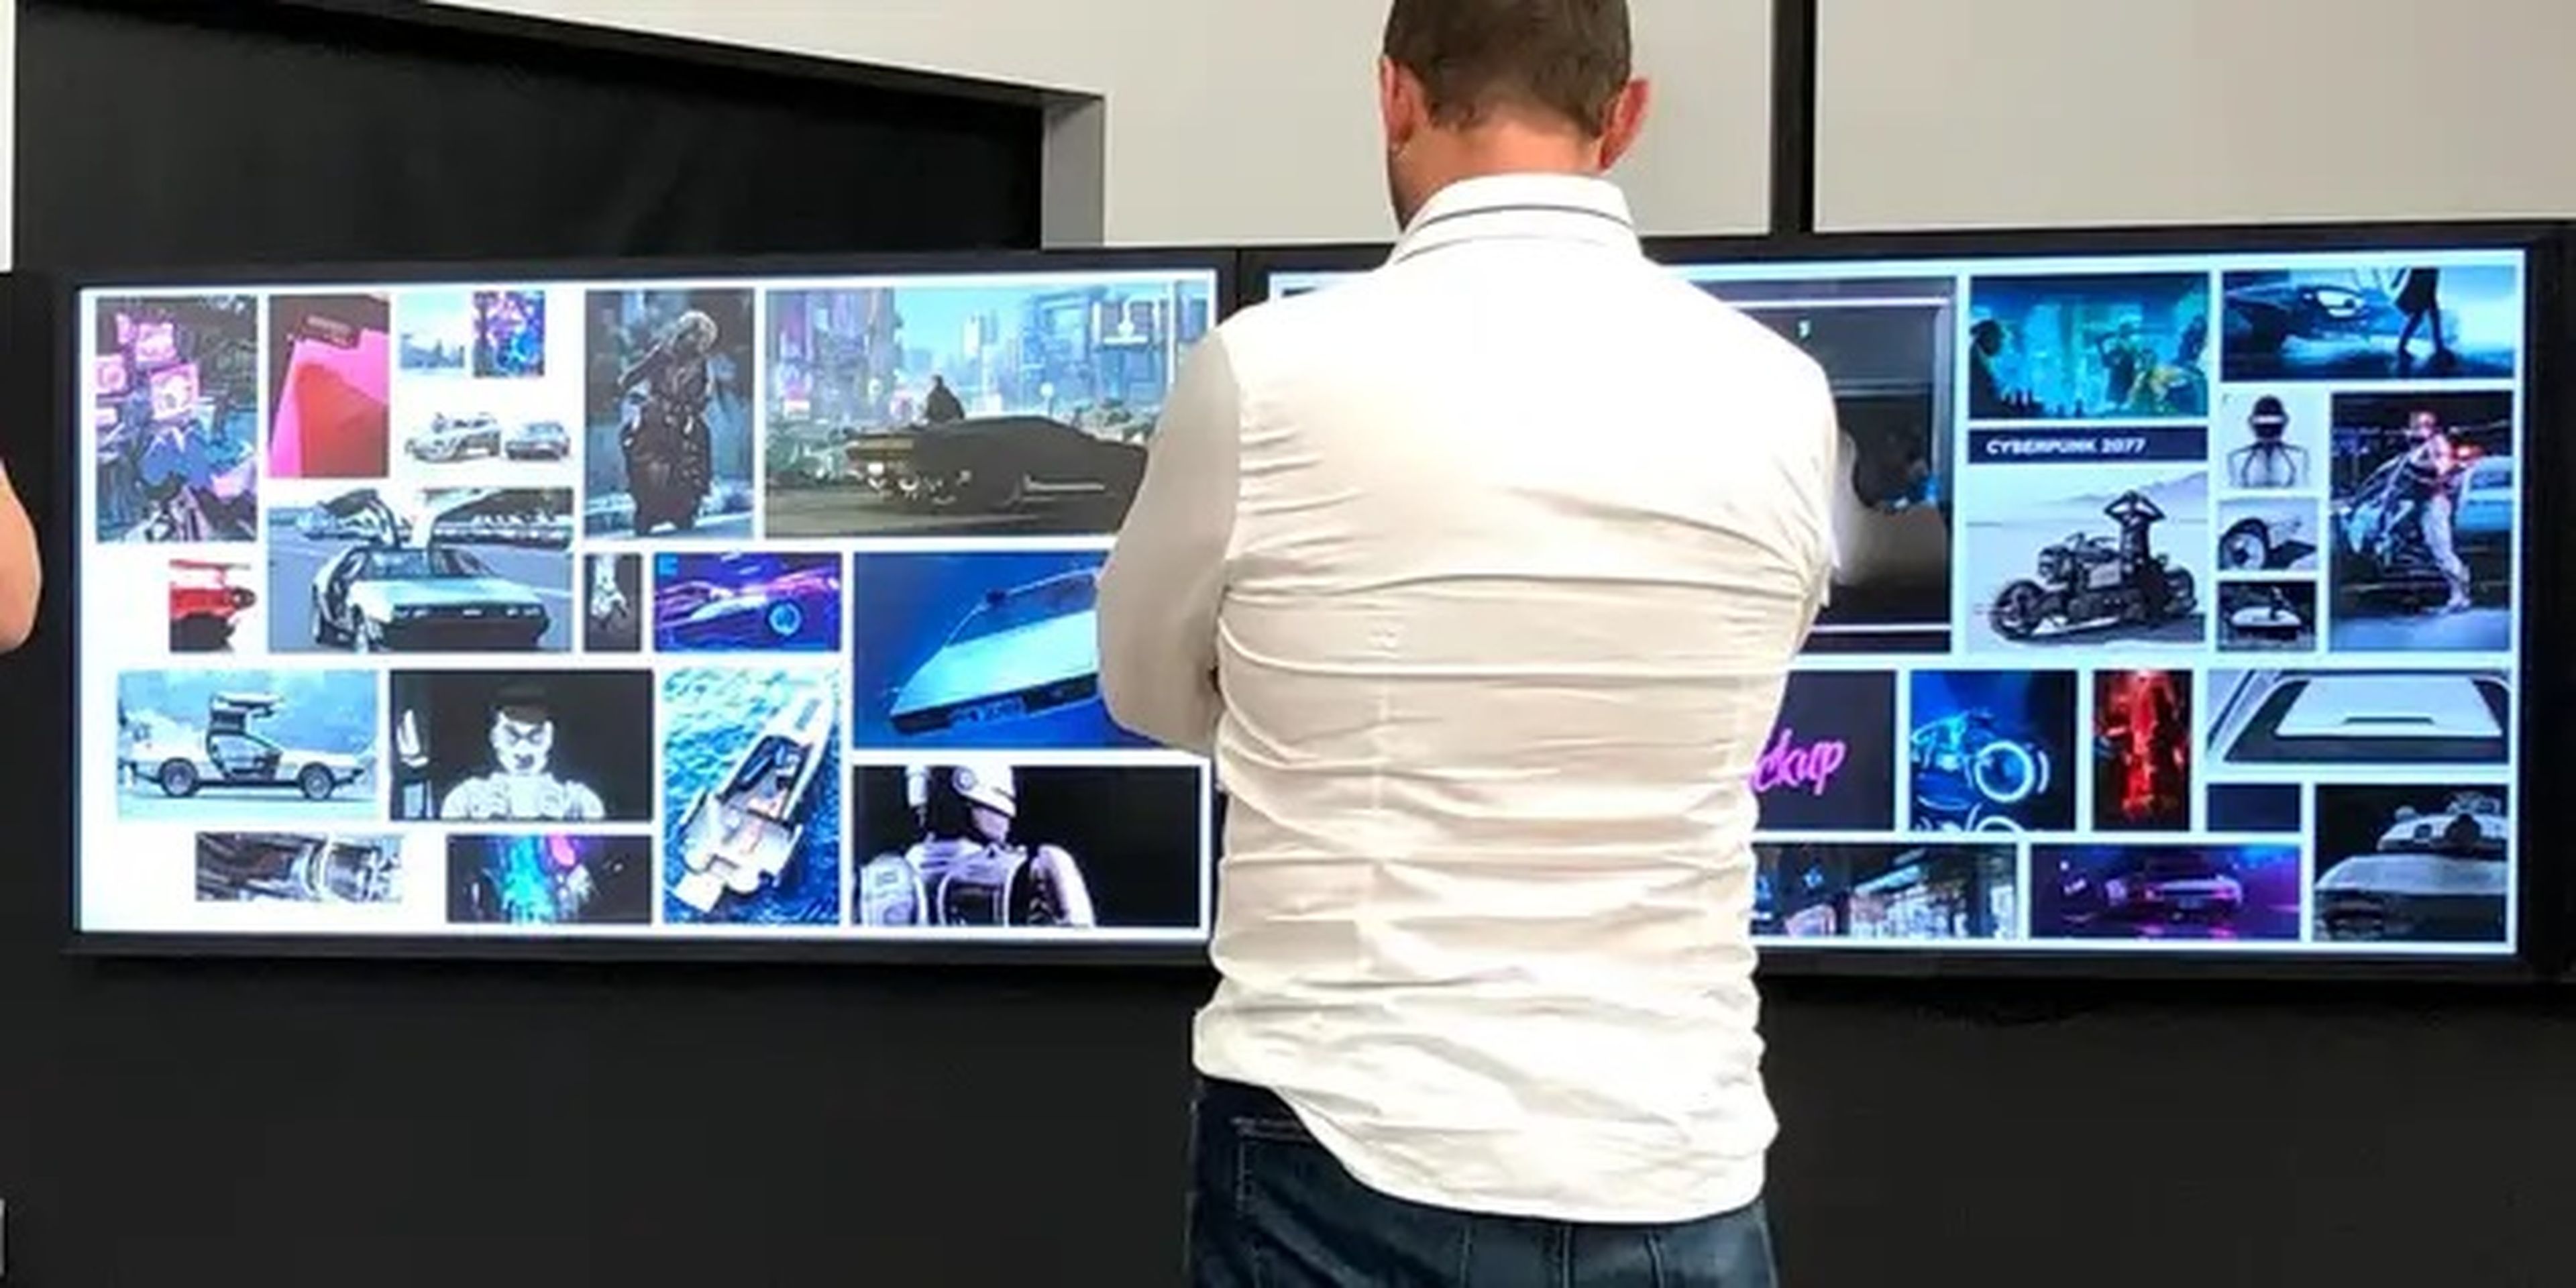 La imagen también muestra algunas de las películas y videojuegos que ayudaron a inspirar el diseño del Cybertruck.